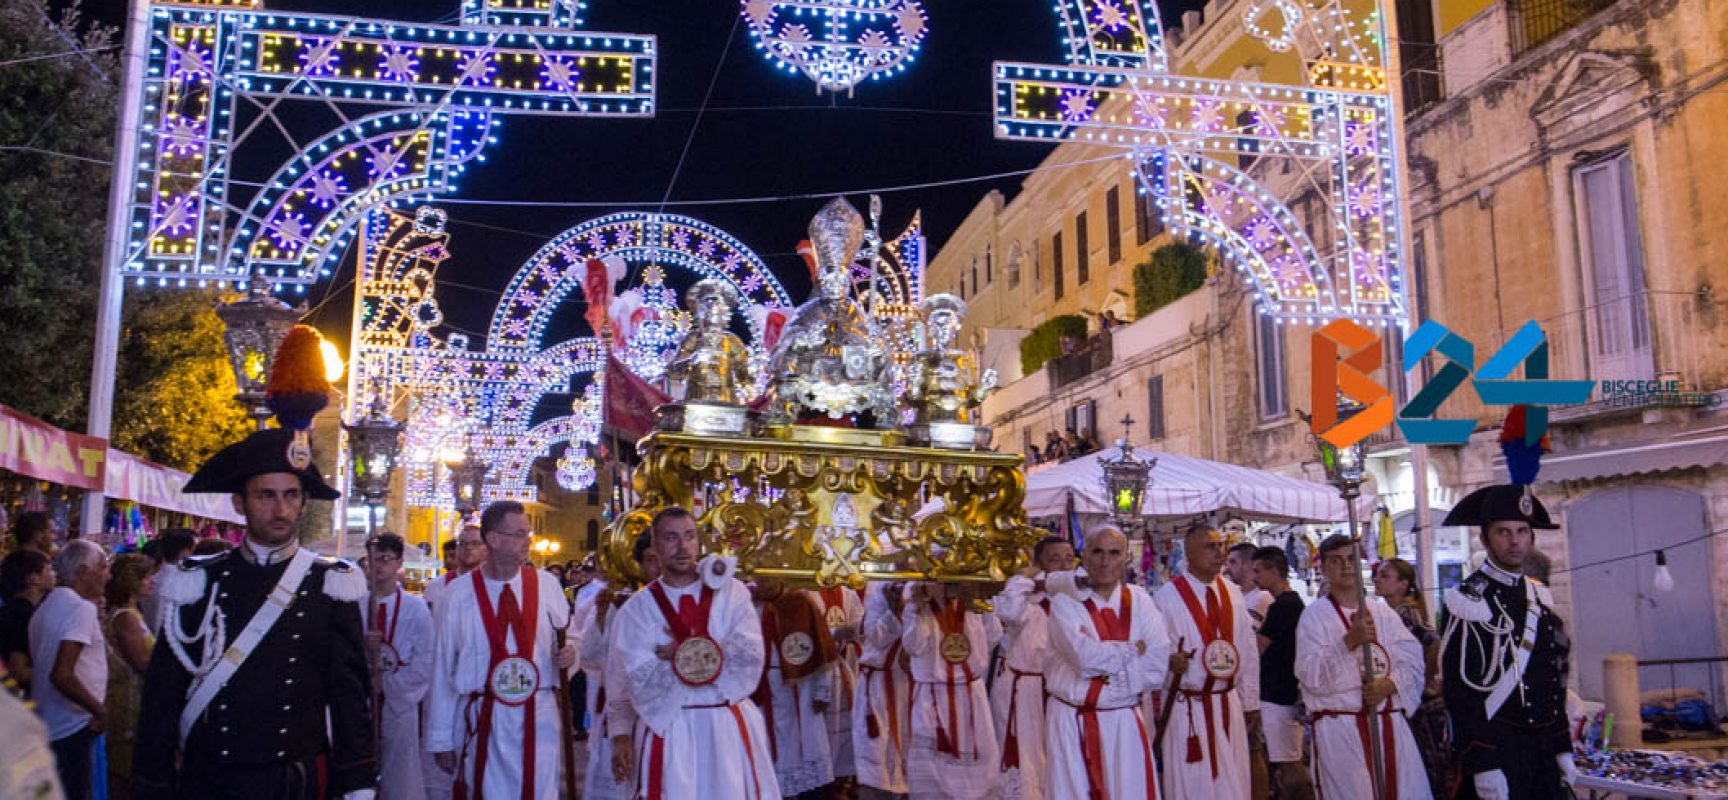 Festa patronale, sacralità e tradizione rivivono nei festeggiamenti della domenica dei santi / FOTO